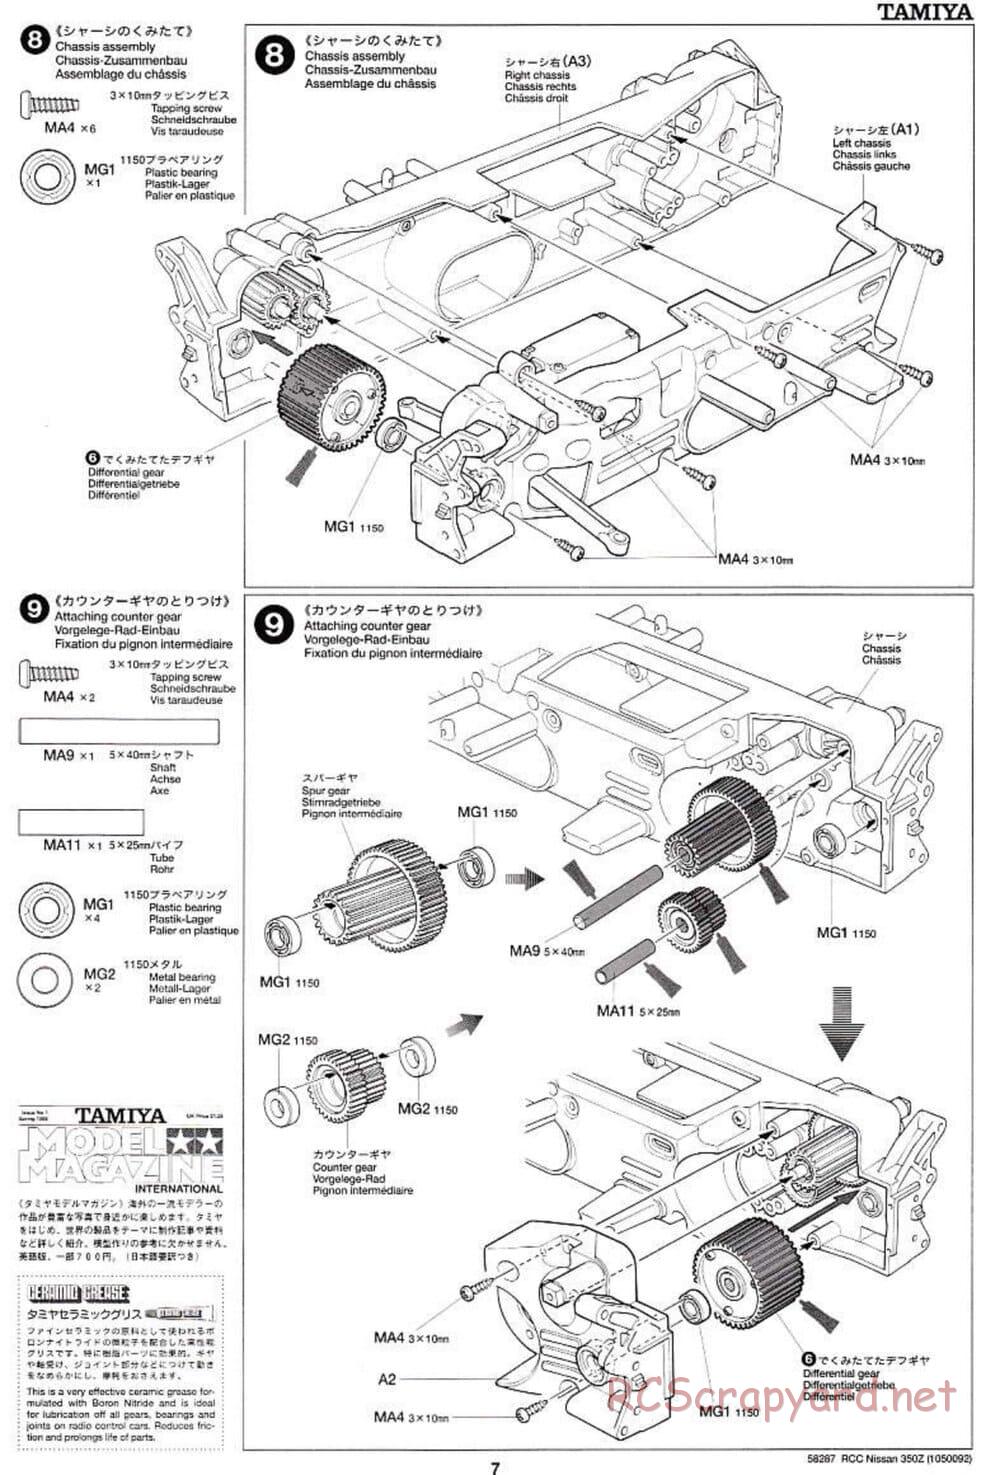 Tamiya - Nissan 350Z - TL-01 Chassis - Manual - Page 7